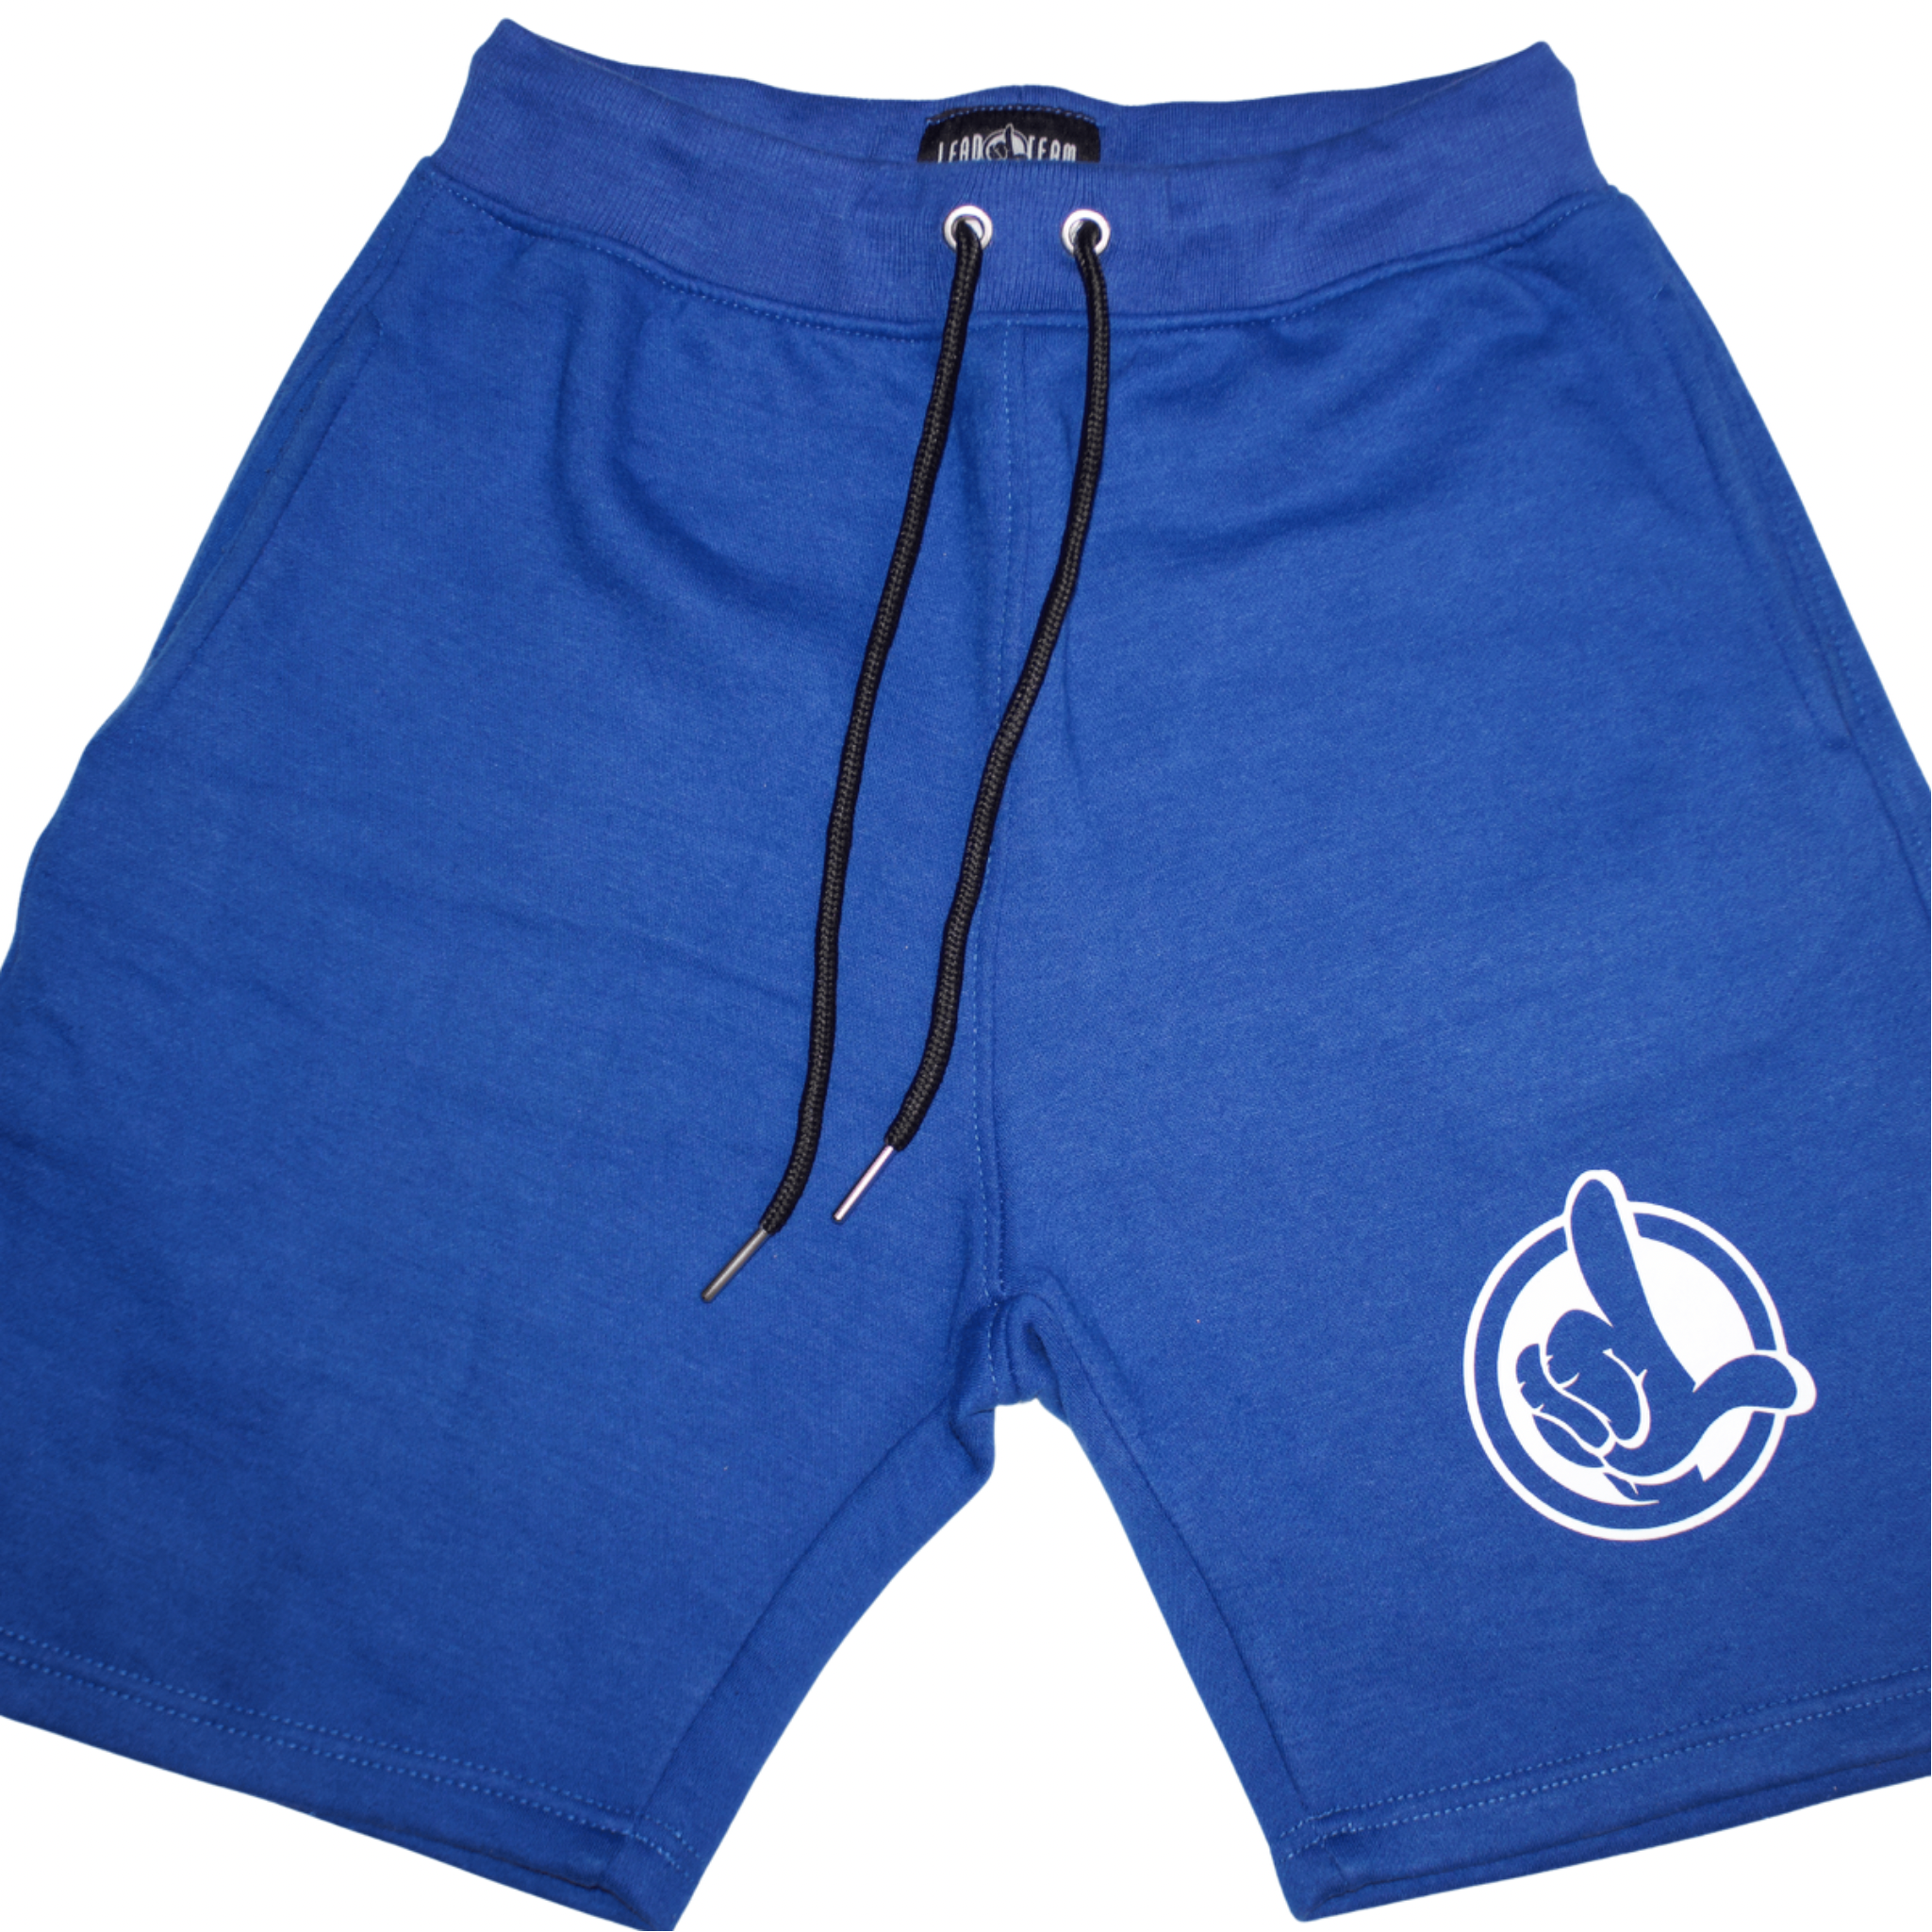 LT Hand Logo Shorts (Royal Blue)